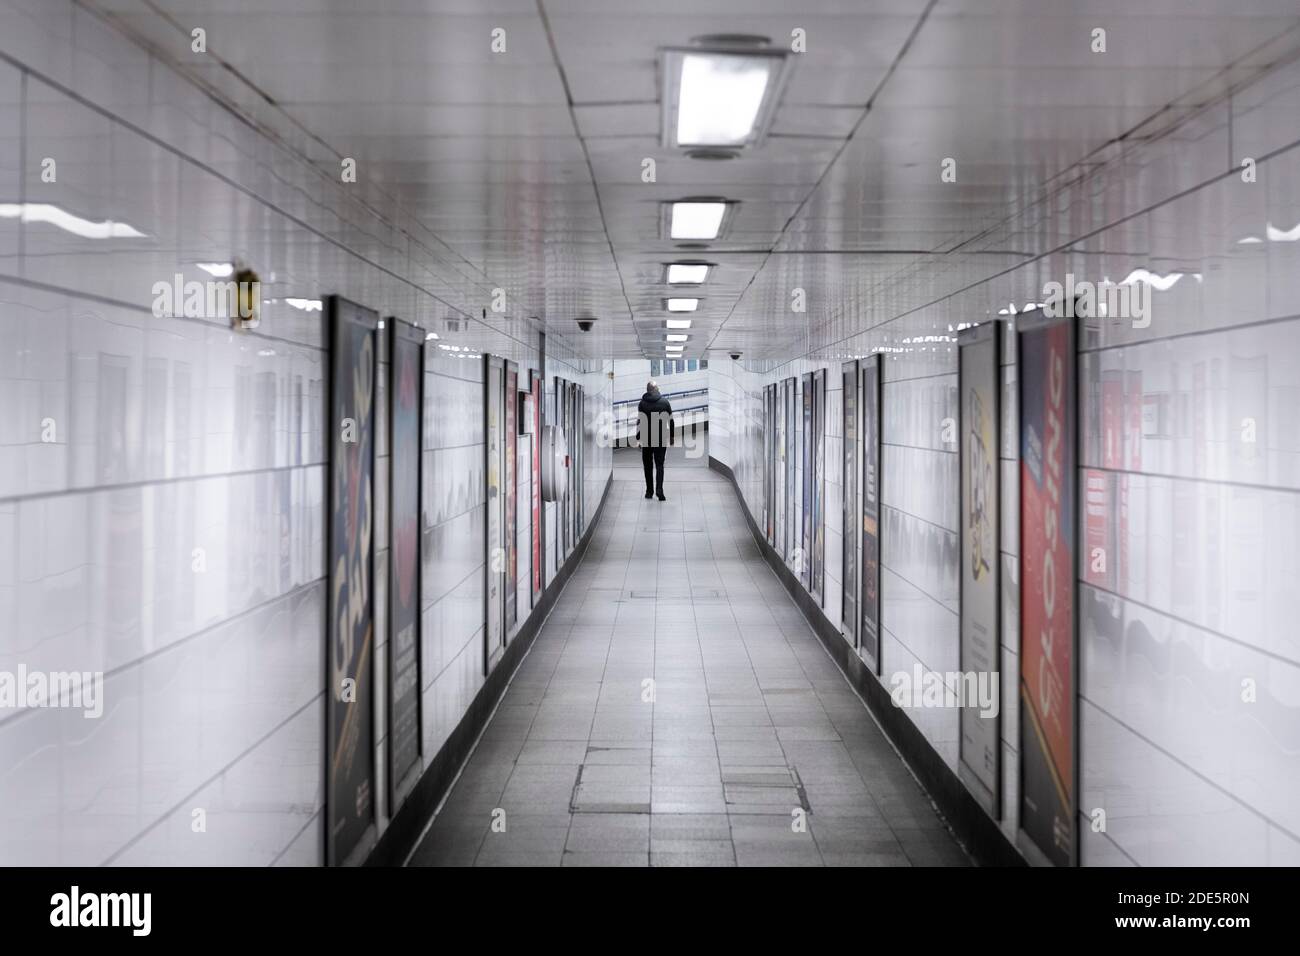 Ruhige, leere Londoner U-Bahn-Station in Coronavirus Covid-19 Pandemiesperre, mit einer einzigen Person im öffentlichen Verkehr, wenn Züge während des Reiseverbots reduziert wurden Stockfoto